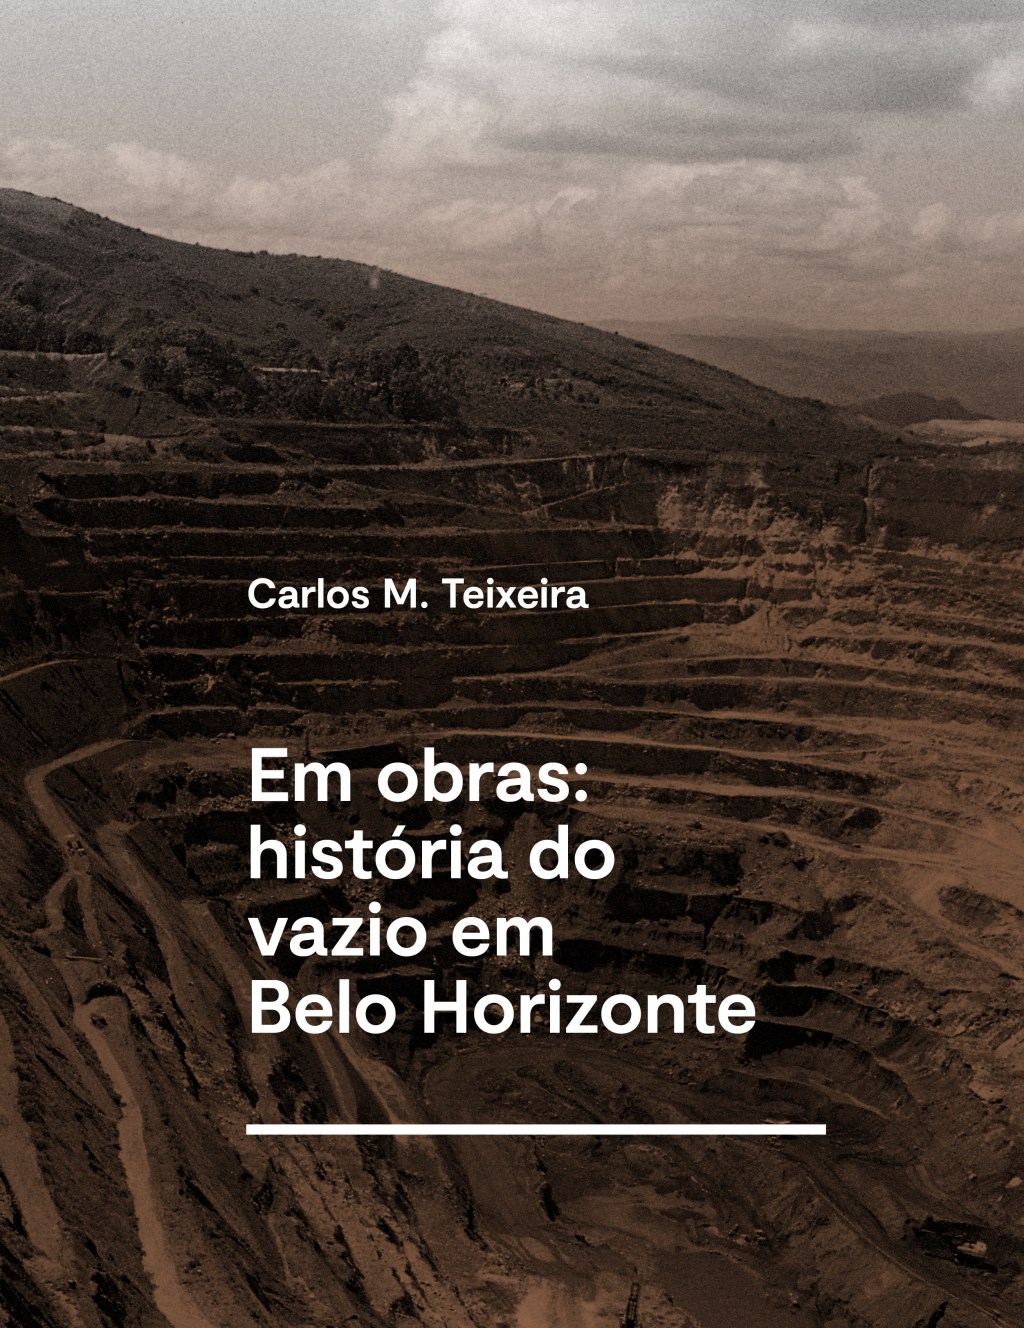 Capa livro Em obras, de Carlos M. Teixeira